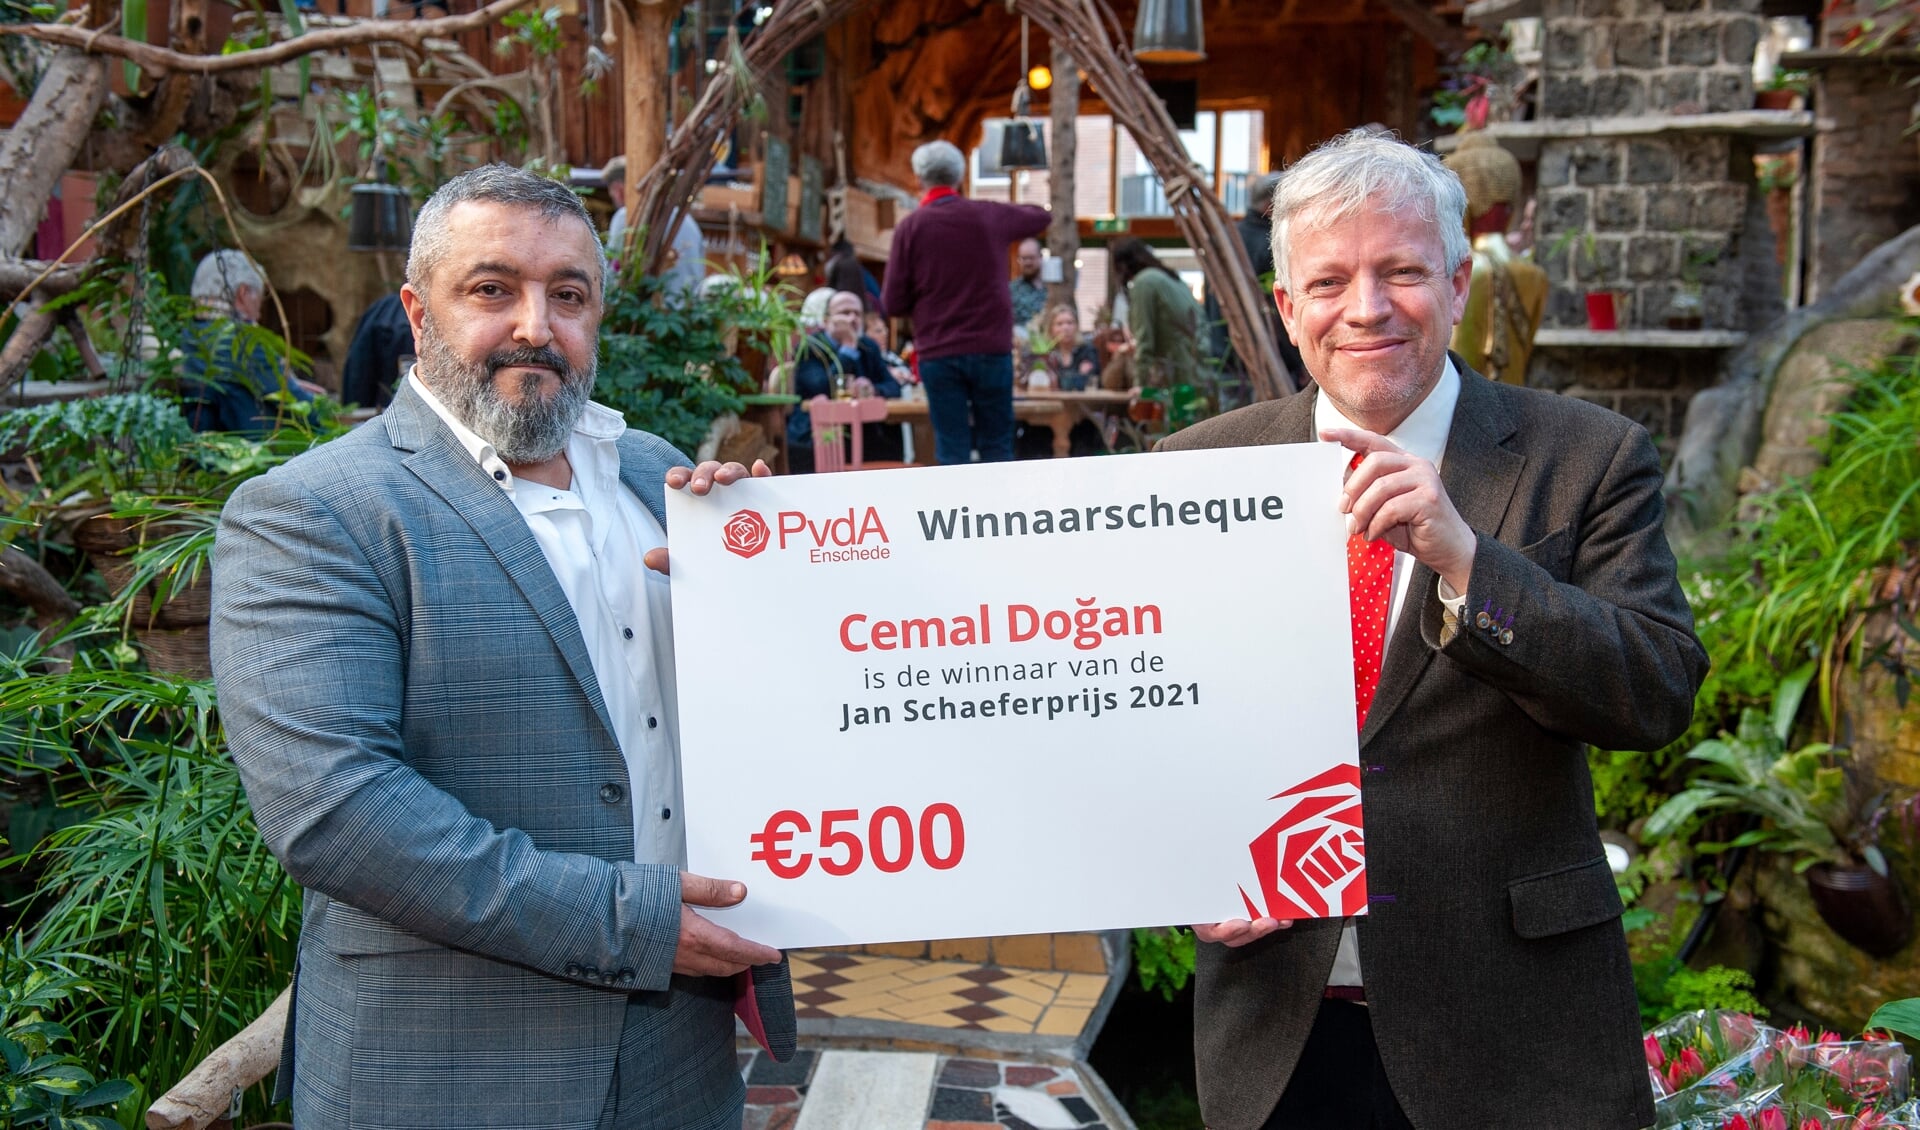 Winnaar Cemal Dogan (op de lijst bij EnschedeAnders) en Nicolas Mansfield. (Foto: Robert Hoetink)